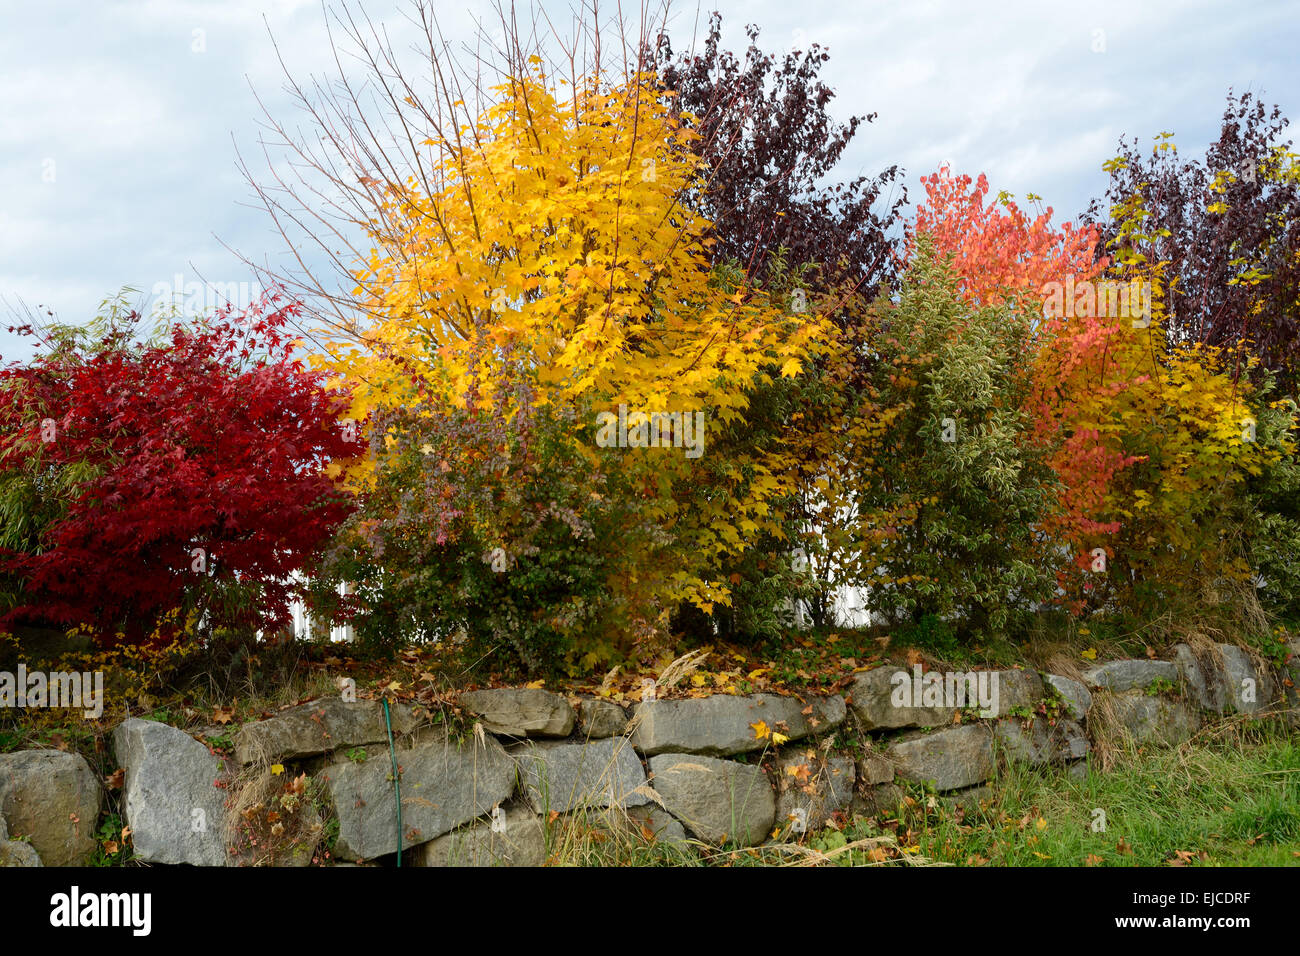 autumn shrubs for privacy Stock Photo